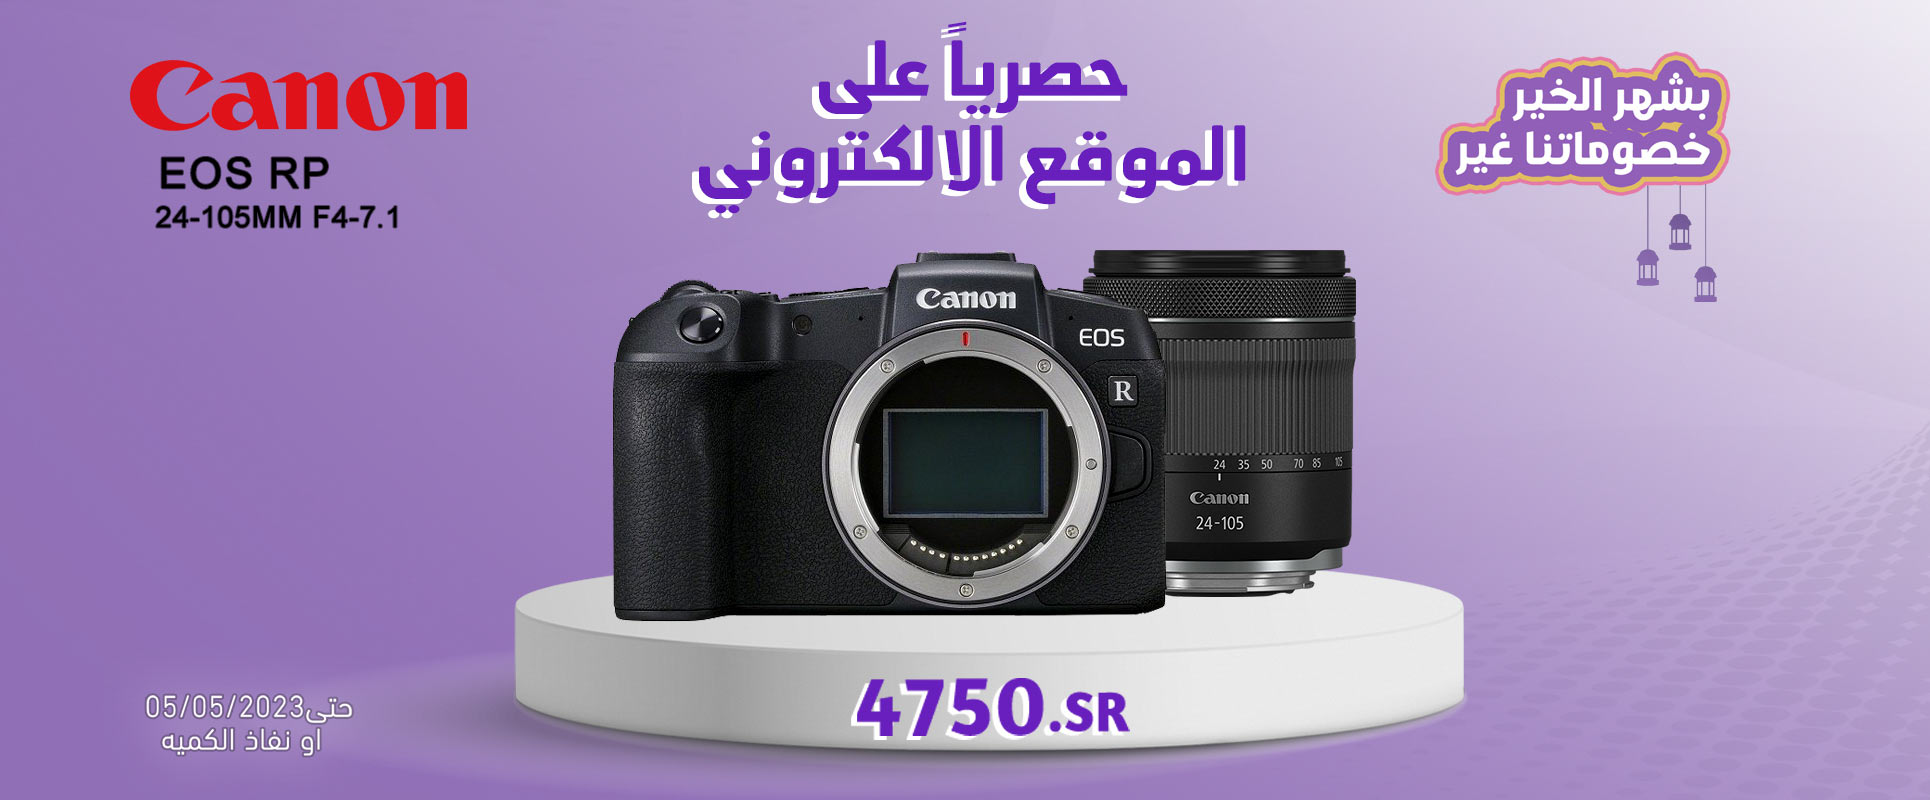 Canon EOSRP